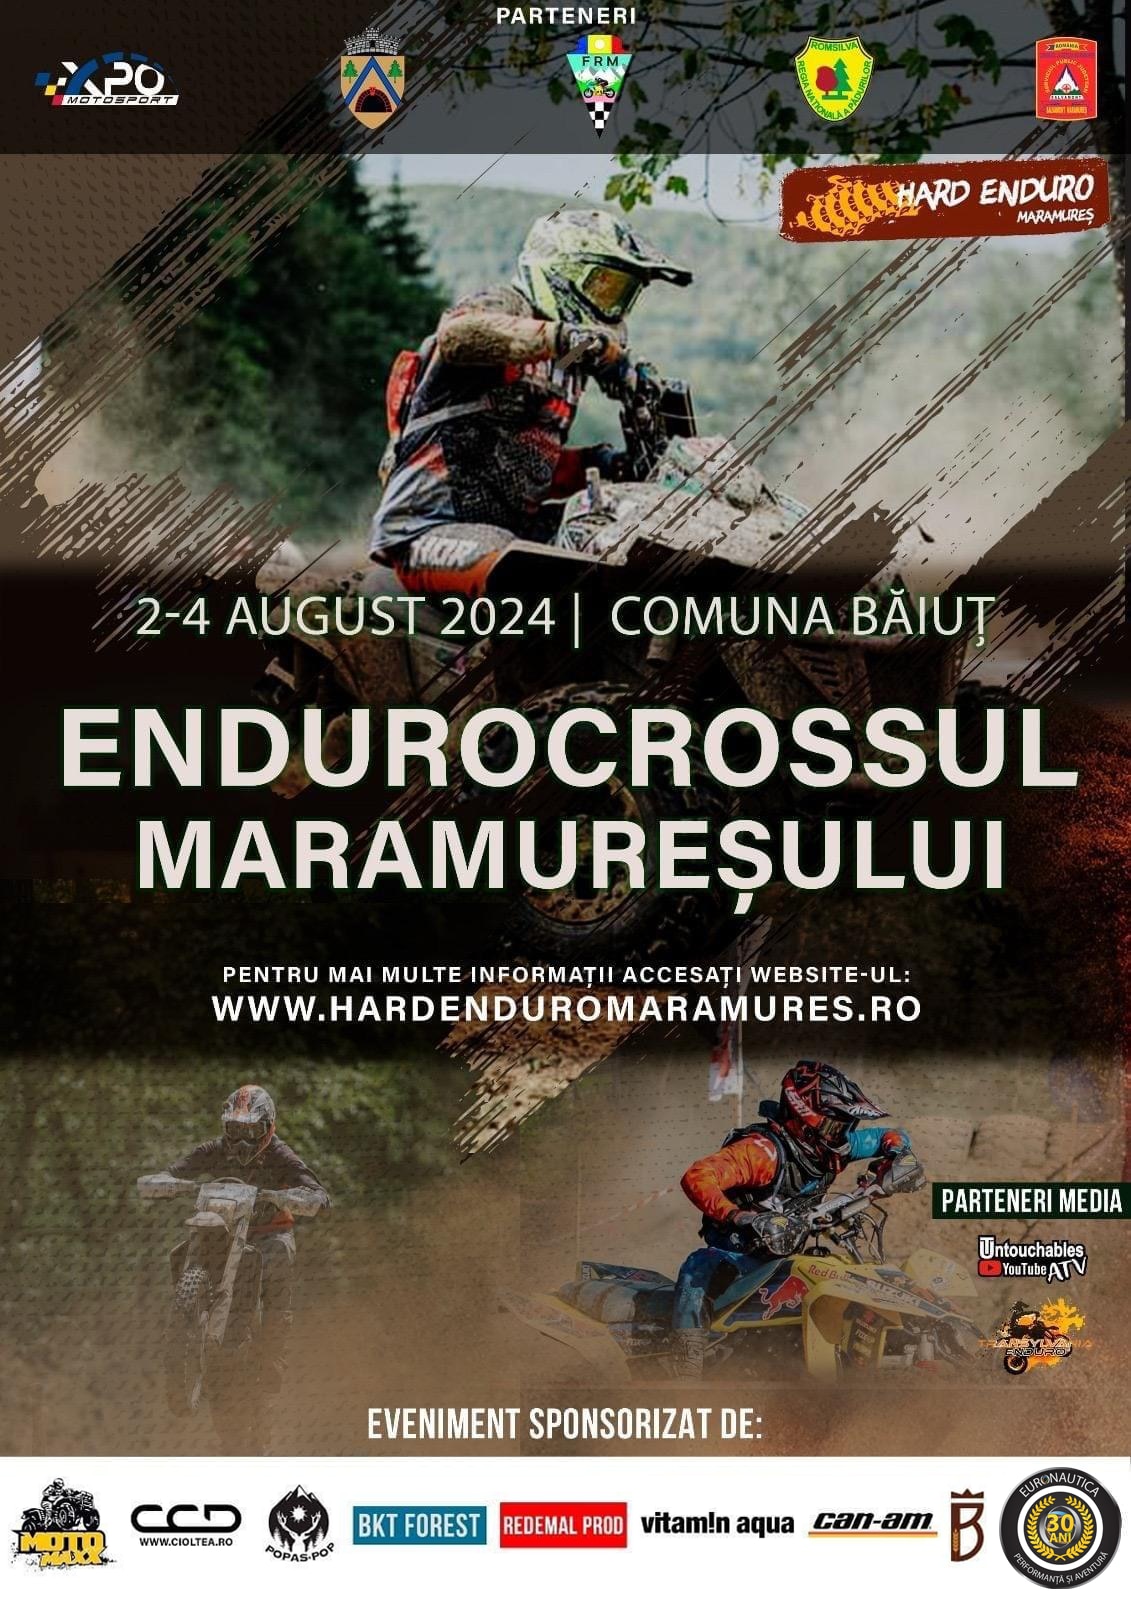 Endurocrossul Maramuresului - Baiut